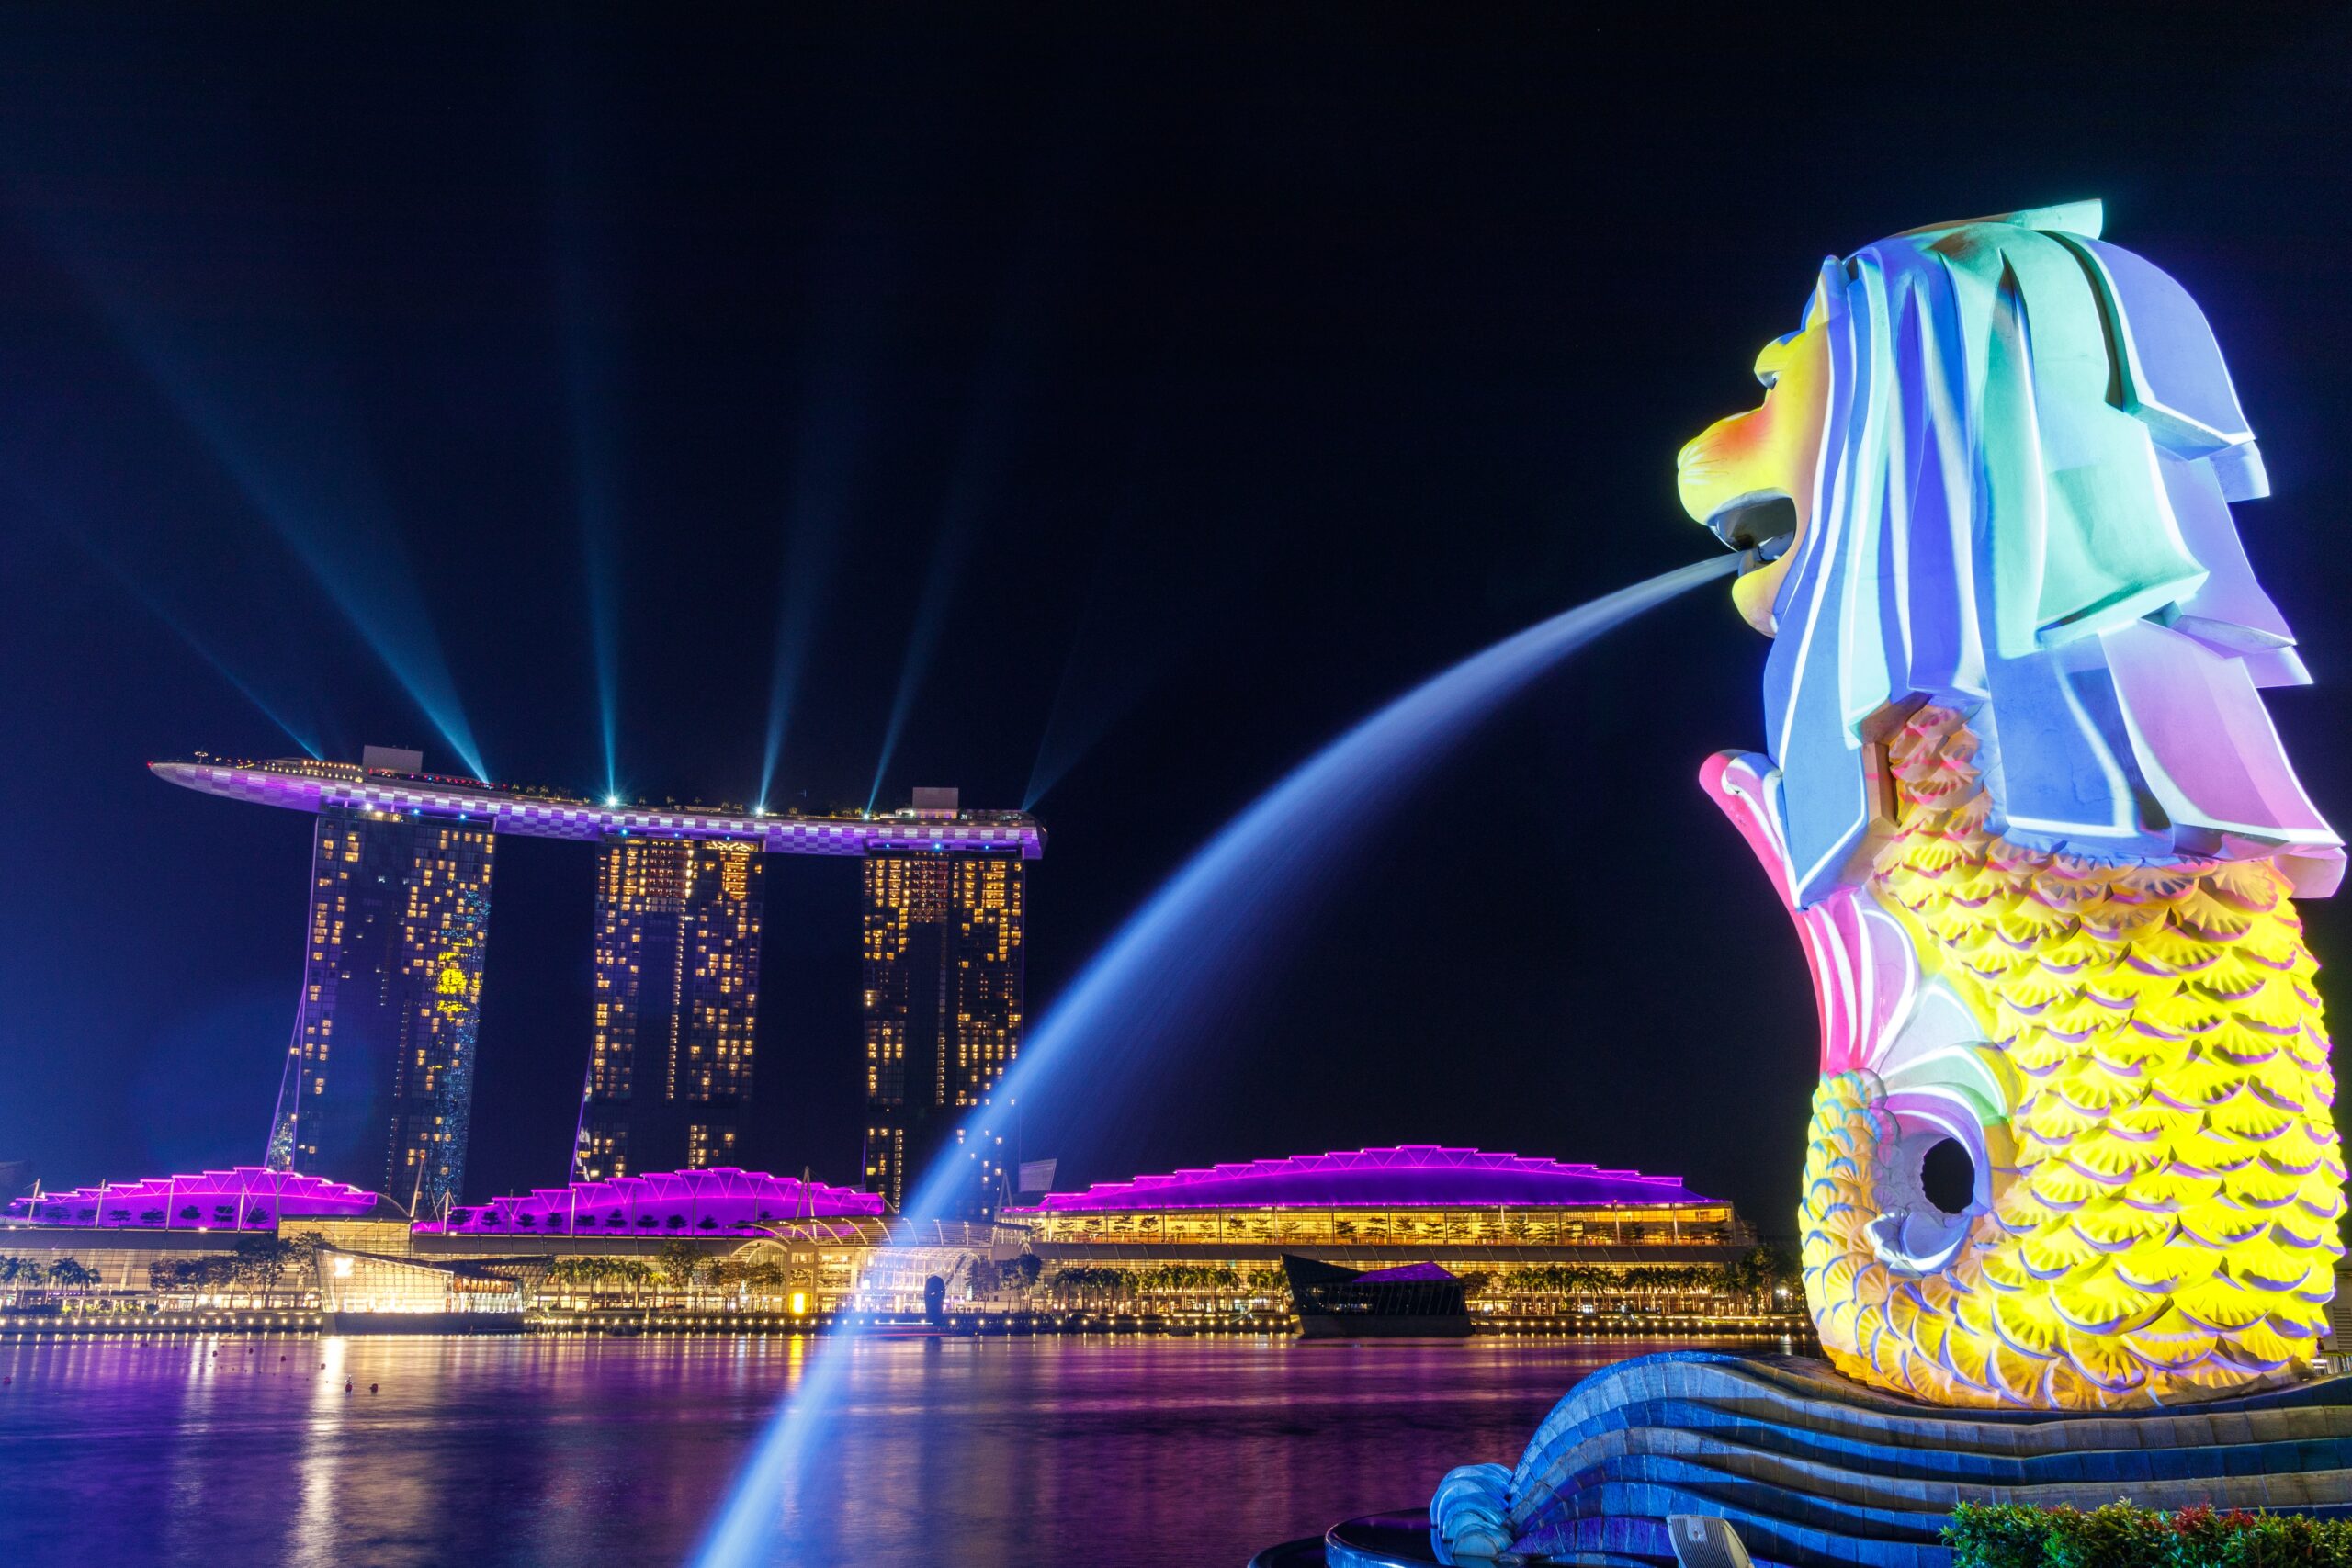 Singapore Lion fountain